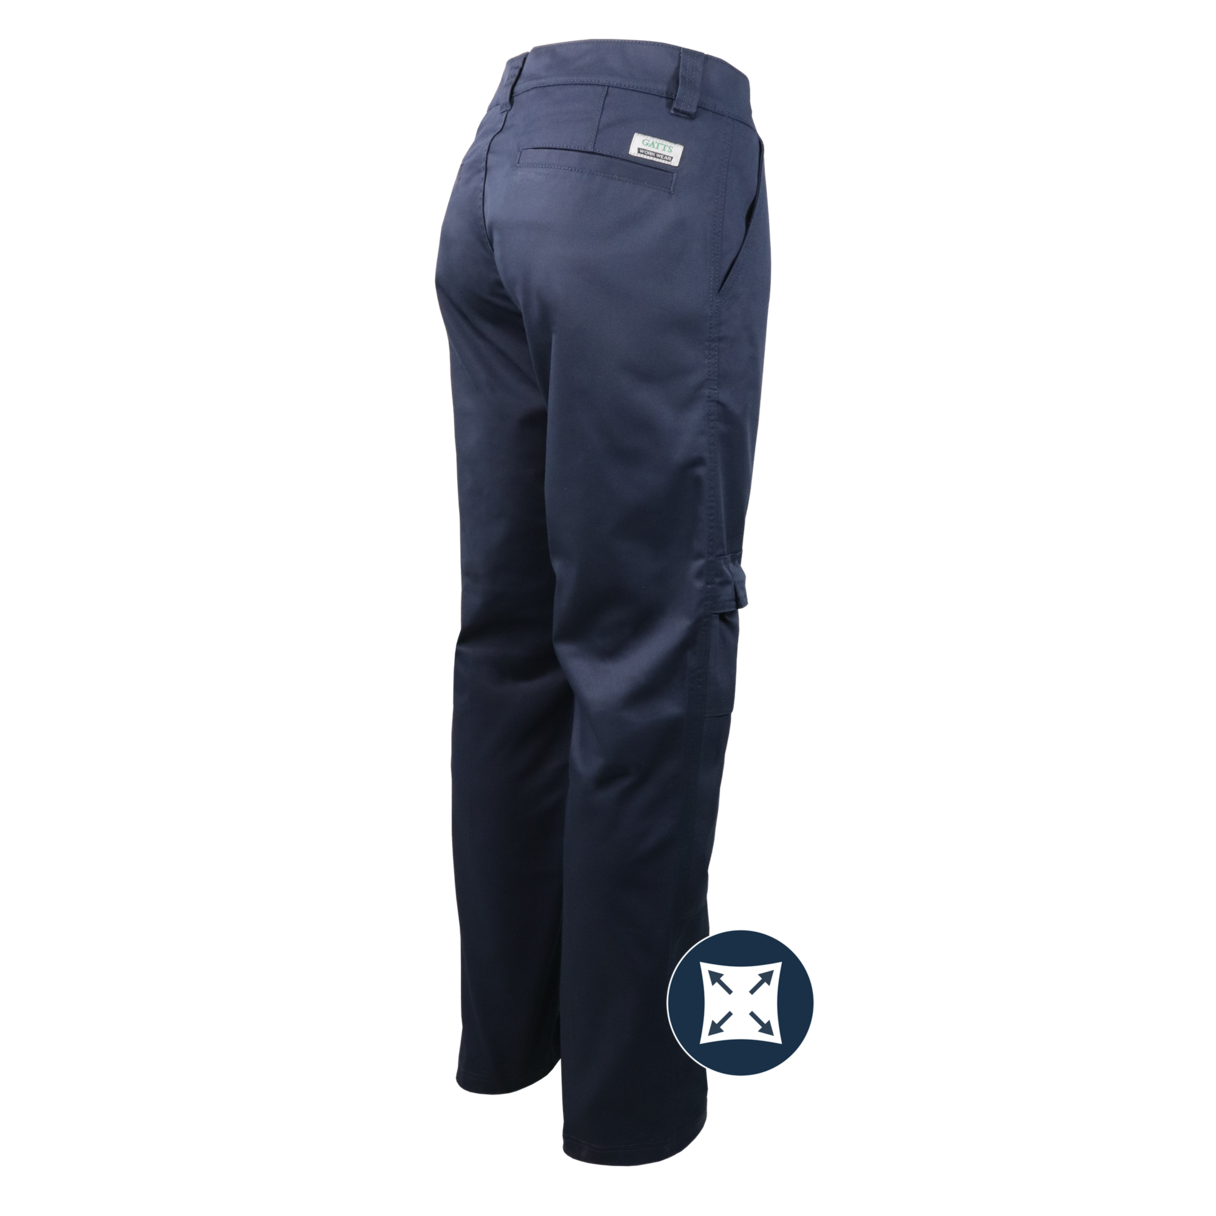 Pantalon de travail extensible à genouillère Gatts #778EX-PAD dos